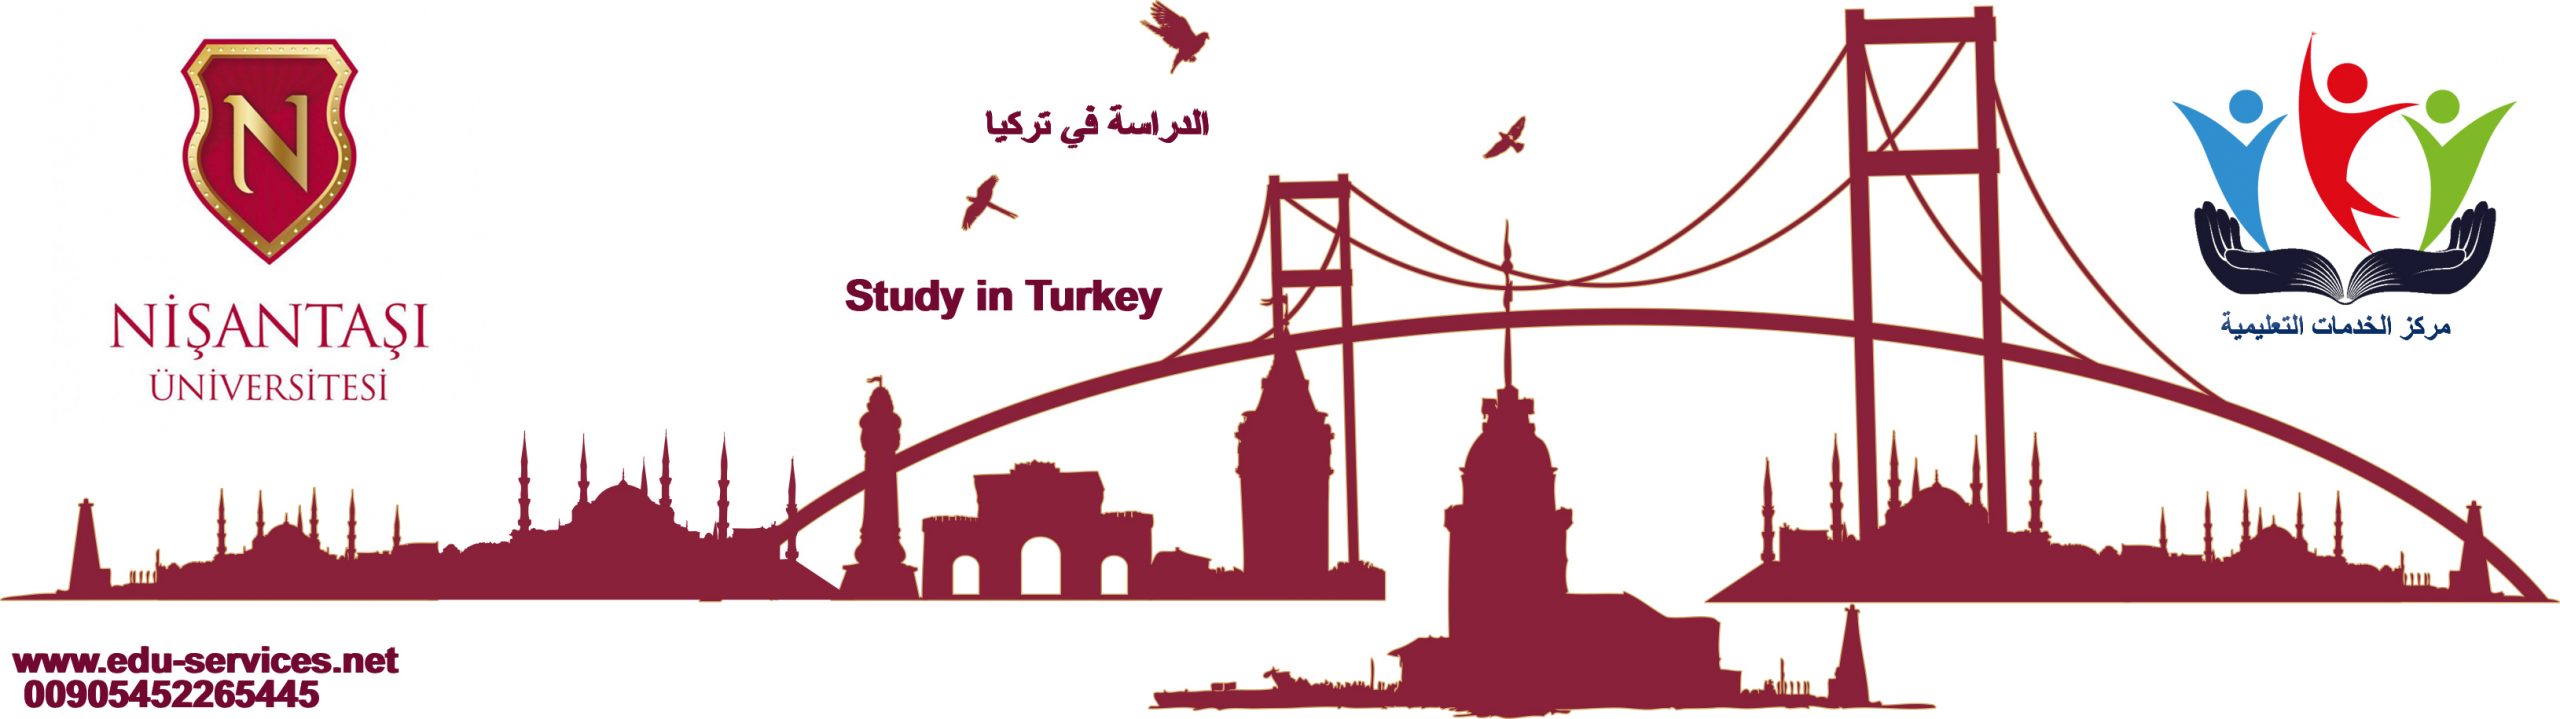 الدراسة في تركيا-جامعة نيشان تاشي